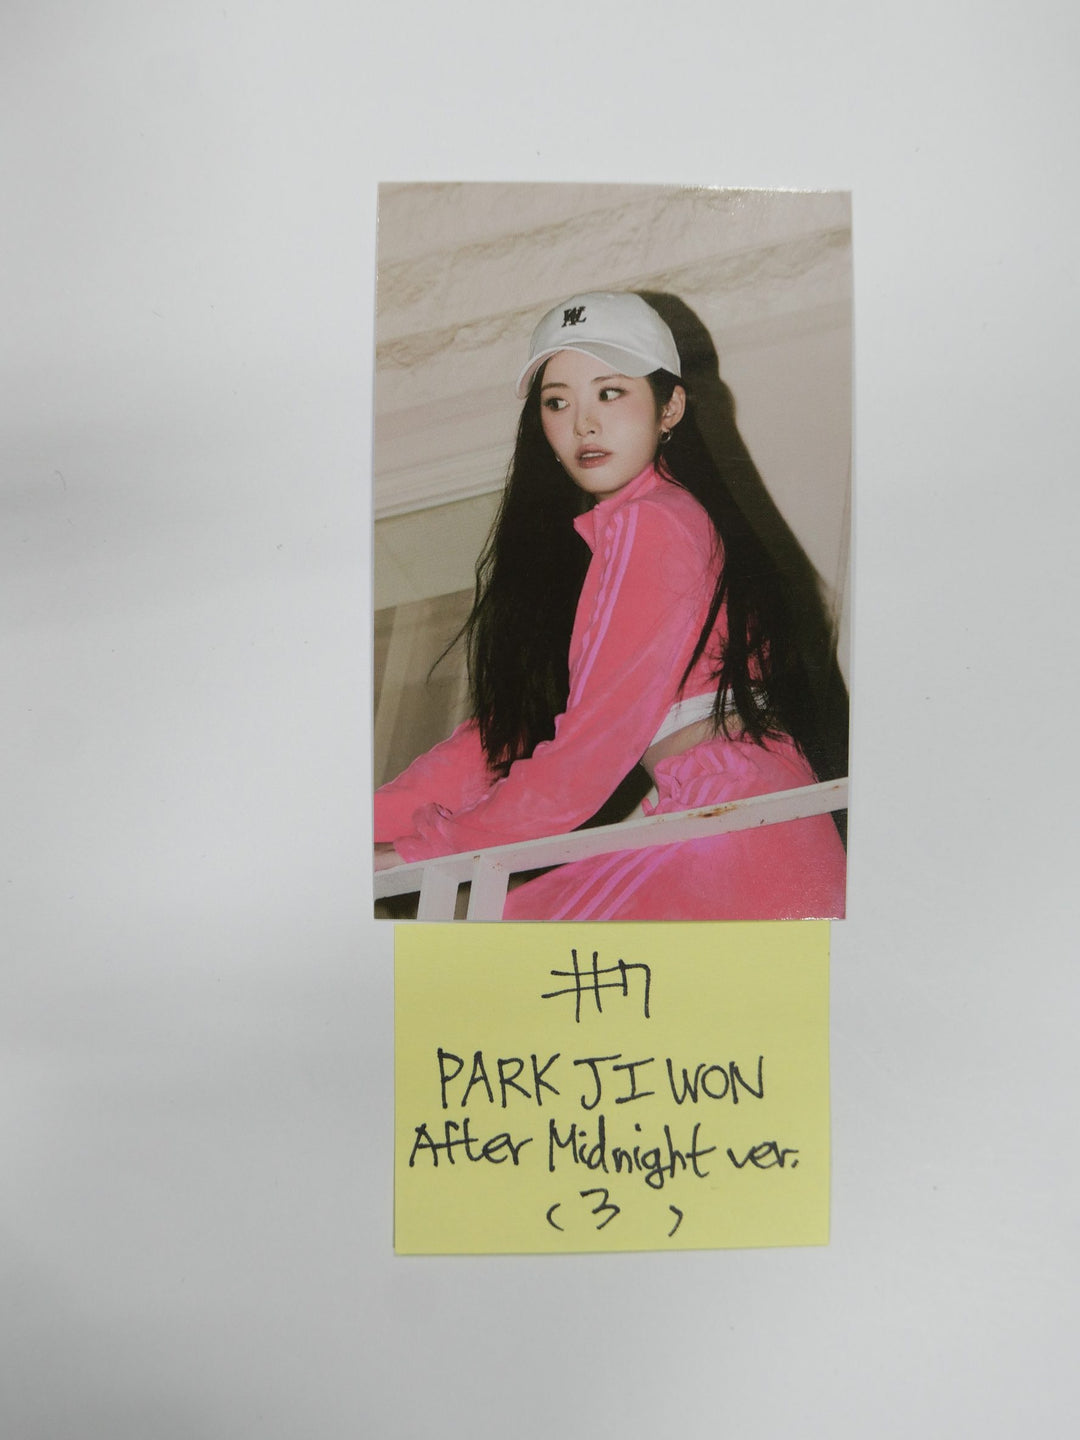 프로미스나인 '미드나잇 게스트' - 공식 포토카드 [After Midnight Ver]